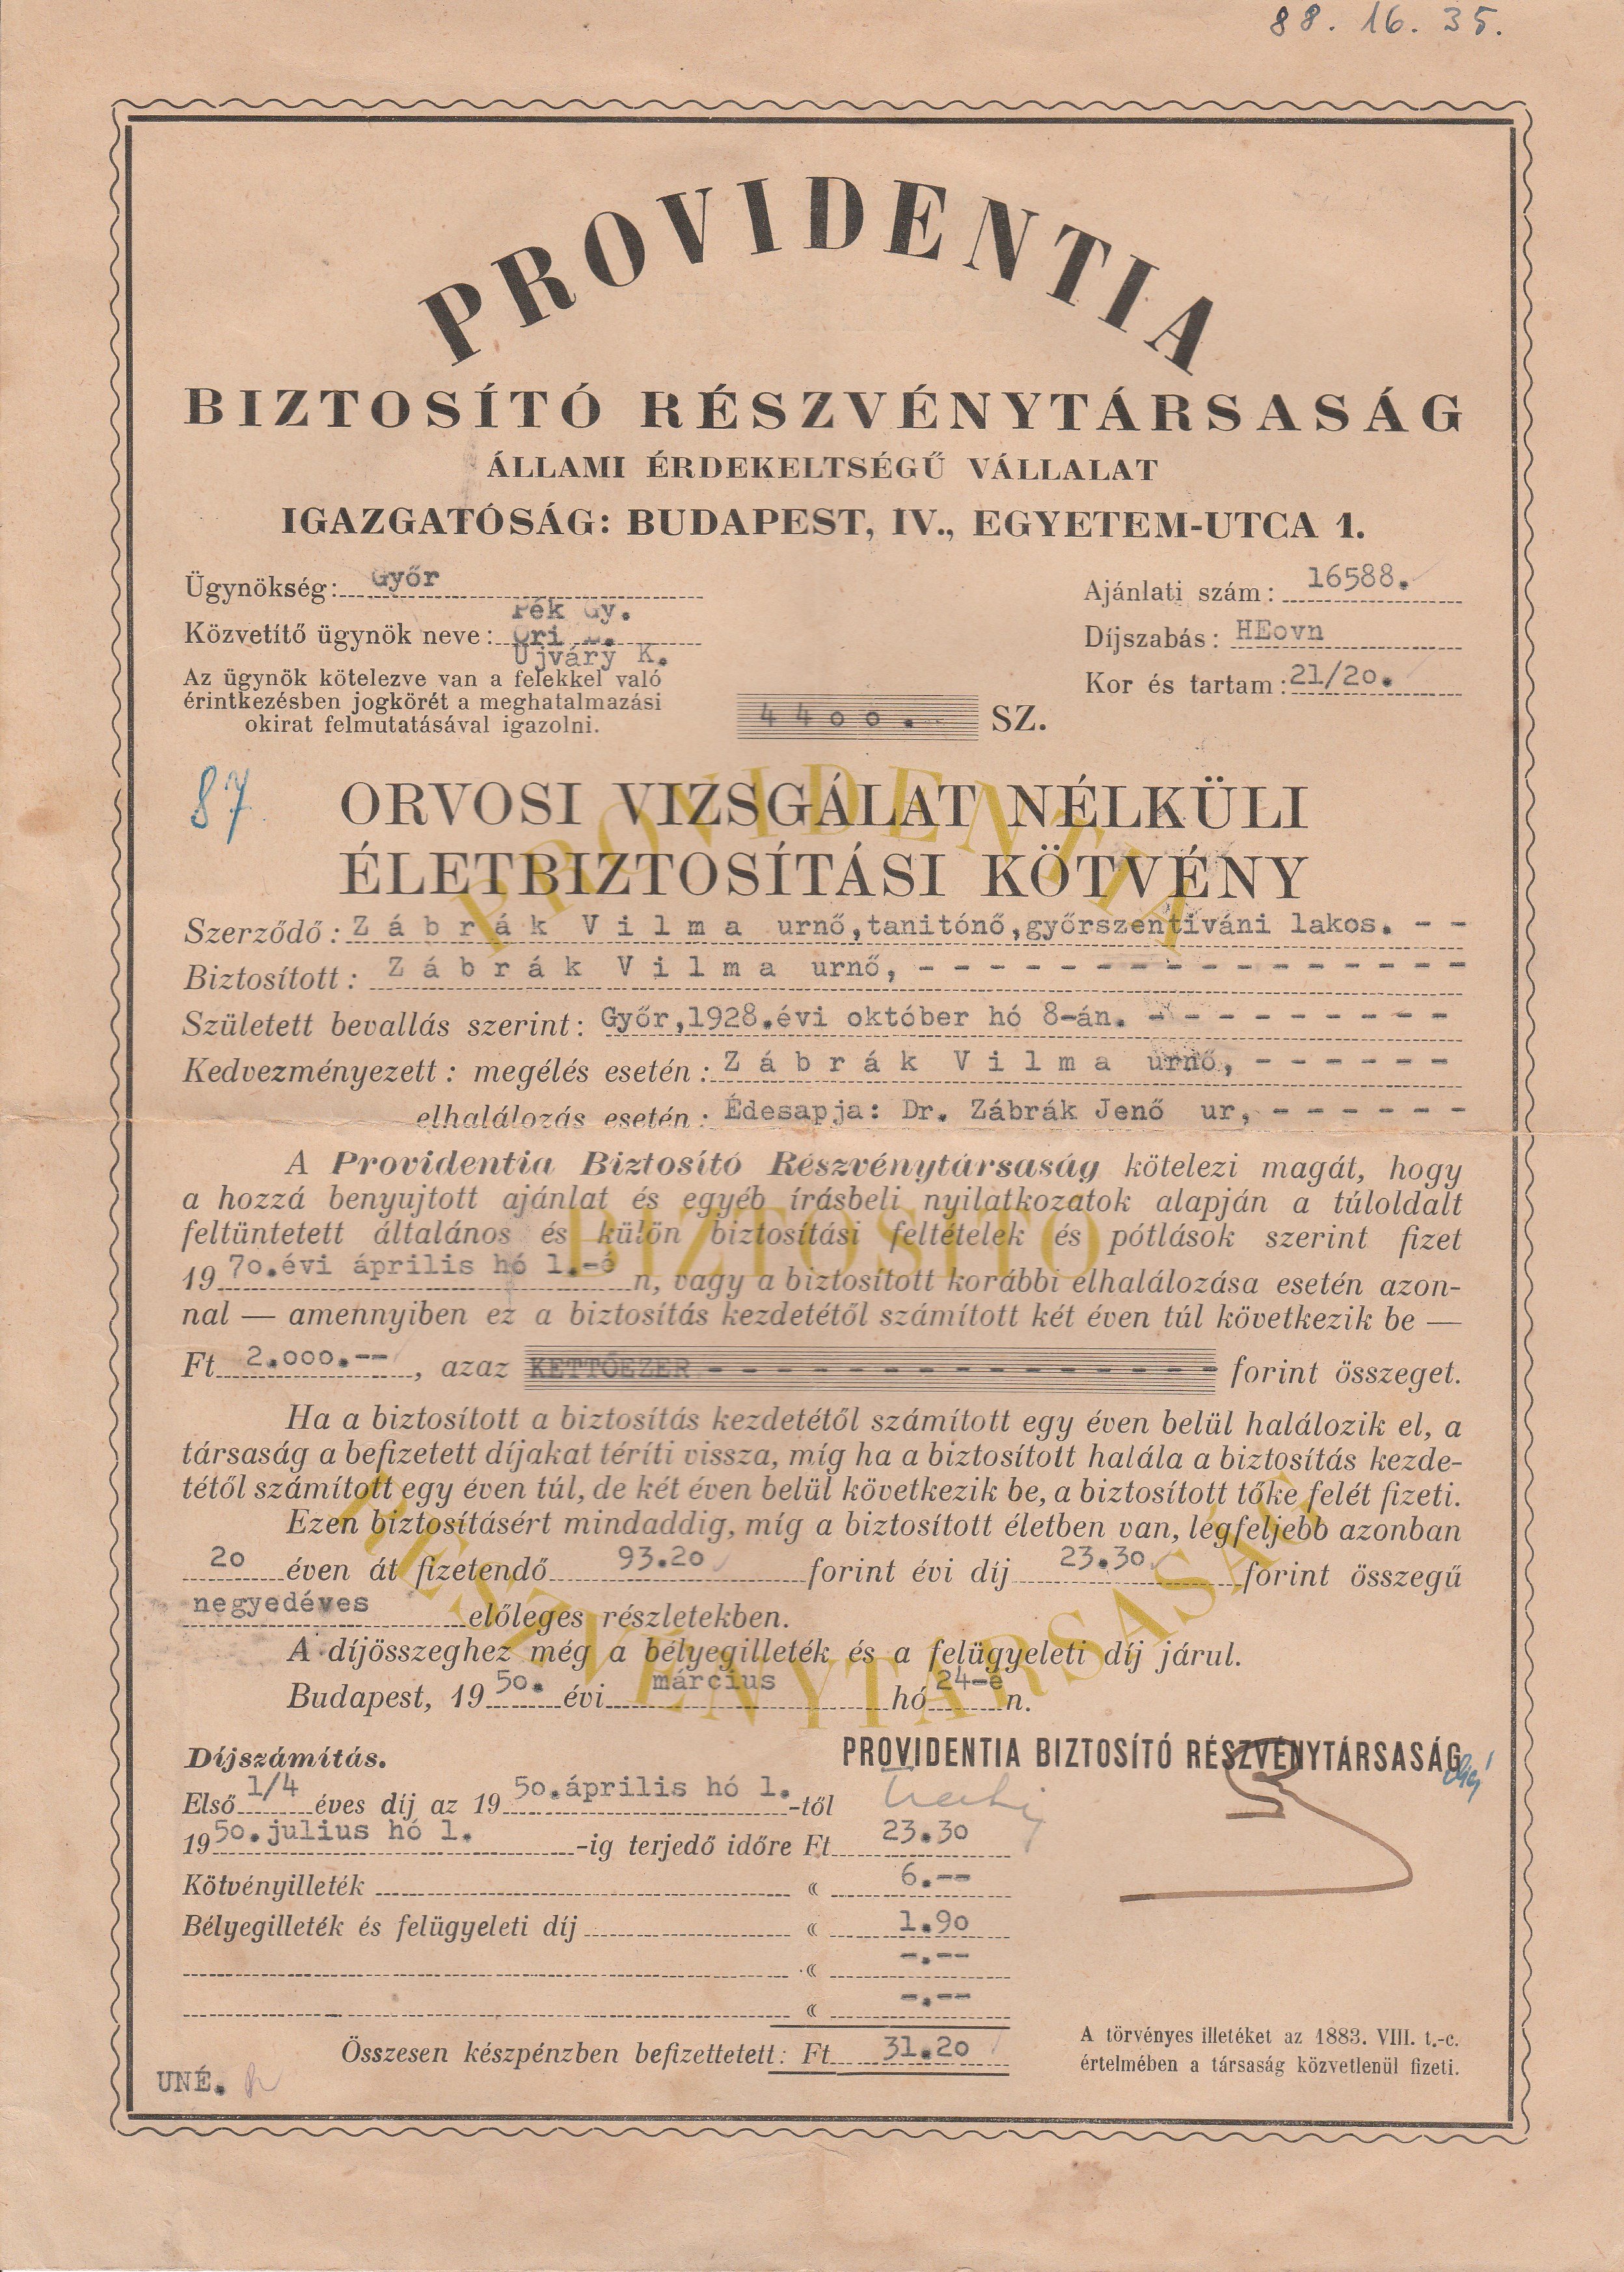 Biztosítási kötvény 1950-ből (Tapolcai Városi Múzeum CC BY-NC-SA)